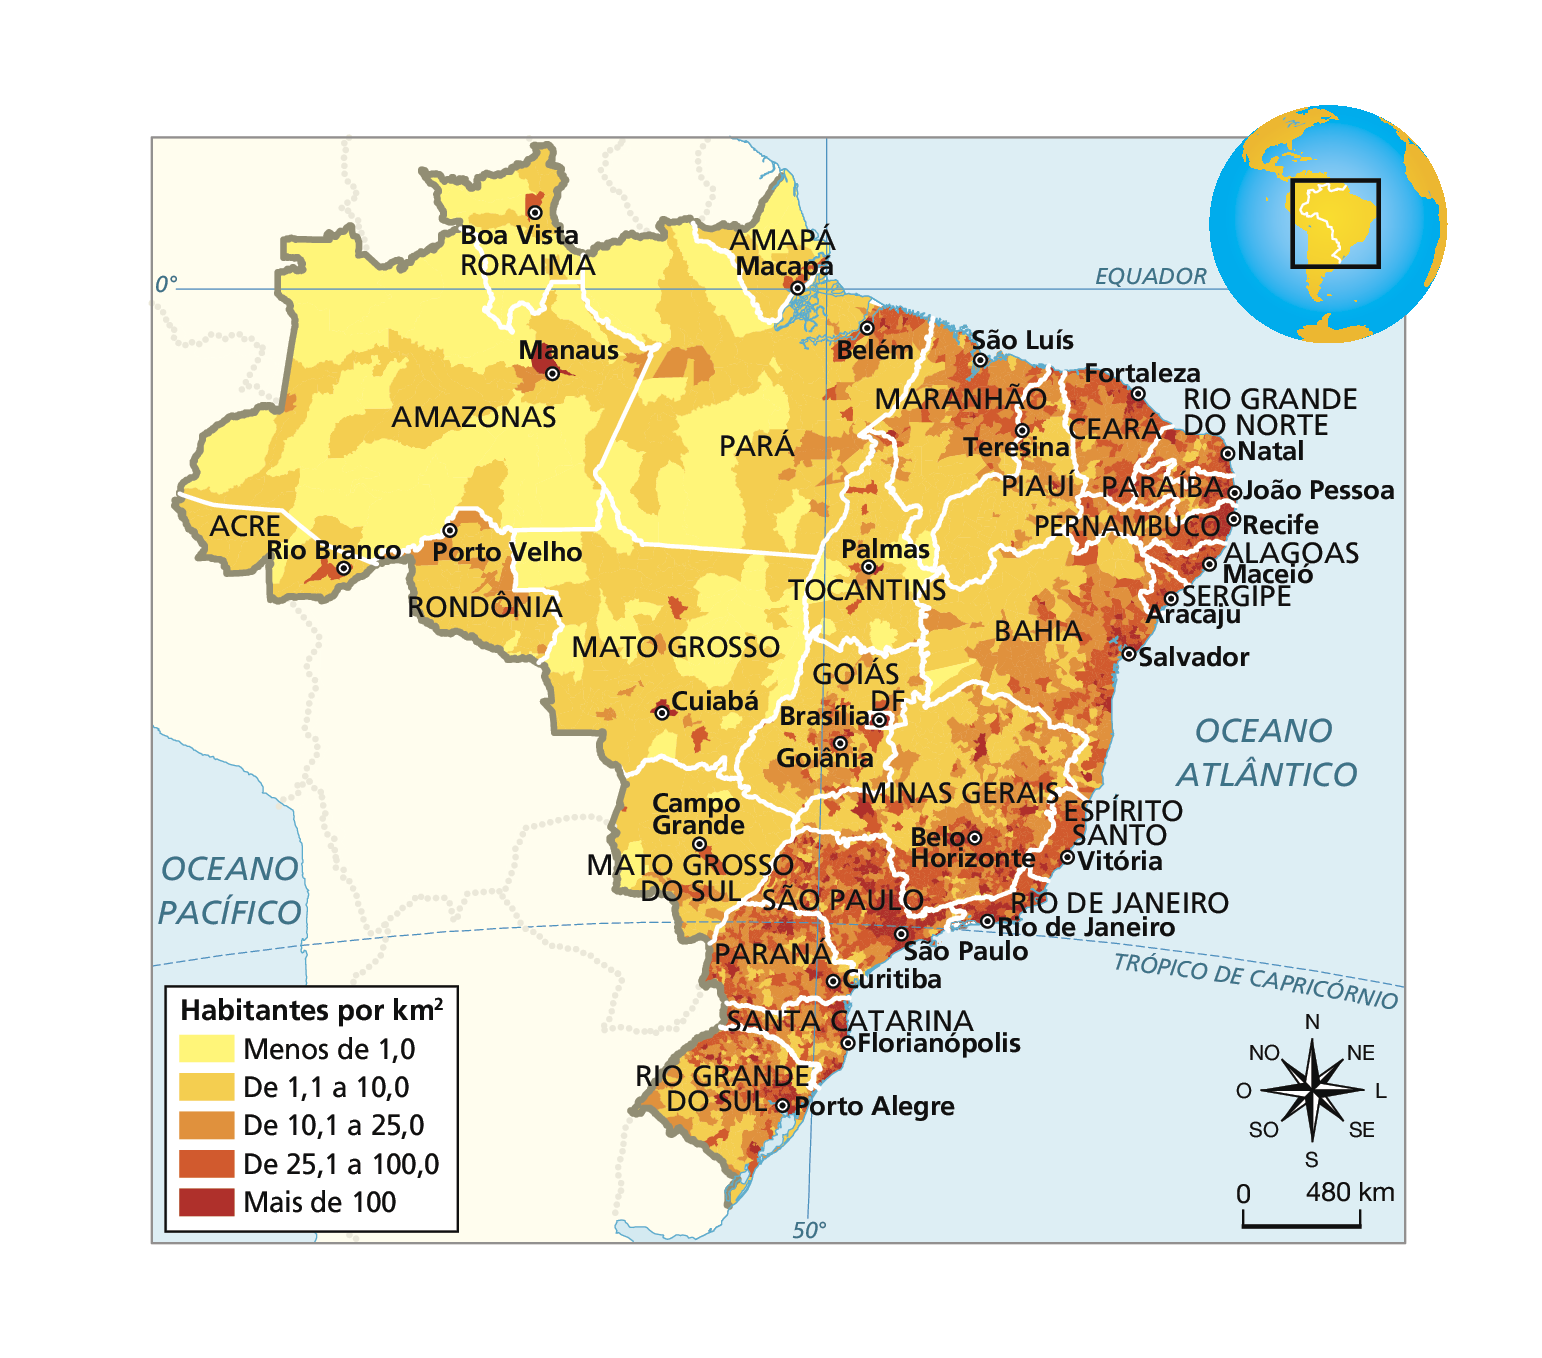 Mapa. Brasil. BRASIL – DENSIDADE DEMOGRÁFICA – 2010. O mapa mostra o Brasil e destaca as seguintes informações: Habitantes por quilômetro quadrado. Os dados são: 
Menos de 1,0: predomina no Amazonas, Roraima, Pará, Mato Grosso, Amapá, Tocantins e Mato Grosso do sul.
De 1,1 a 10,0: predomina na região Norte e Centro-Oeste do Brasil. 
De 10,1 a 25,0: predomina no interior do Nordeste, parte do Norte e Centro-Oeste. 
De 25,1 a 100,0: predomina nas capitais das regiões norte, Centro-Oeste, em grande parte do Nordeste, sudeste e sul do Brasil. 
Mais de 100: Predomina nas capitais das regiões Norte e Centro-Oeste, faixa litorânea do Pará, Nordeste, grande parte do Sudeste e Sul. À direita, no canto superior, globo terrestre destaca a região descrita. Na parte inferior, rosa dos ventos e escala de 0 a 480 quilômetros.